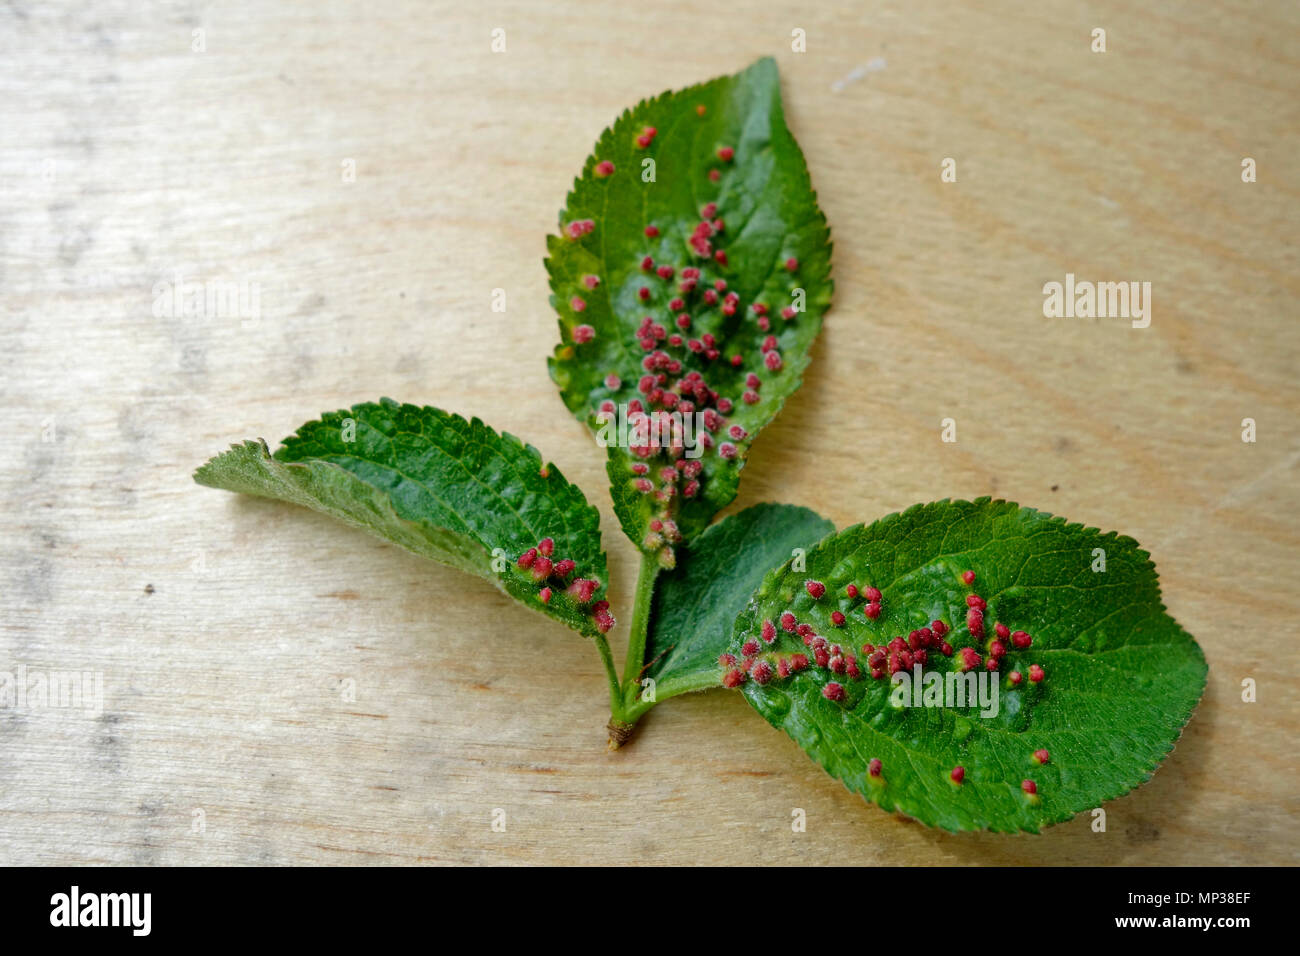 Prugna foglie fortemente infestati da acari eupadi Phyllocoptes che ha causato lo sviluppo di red gal, pistules. Foto Stock